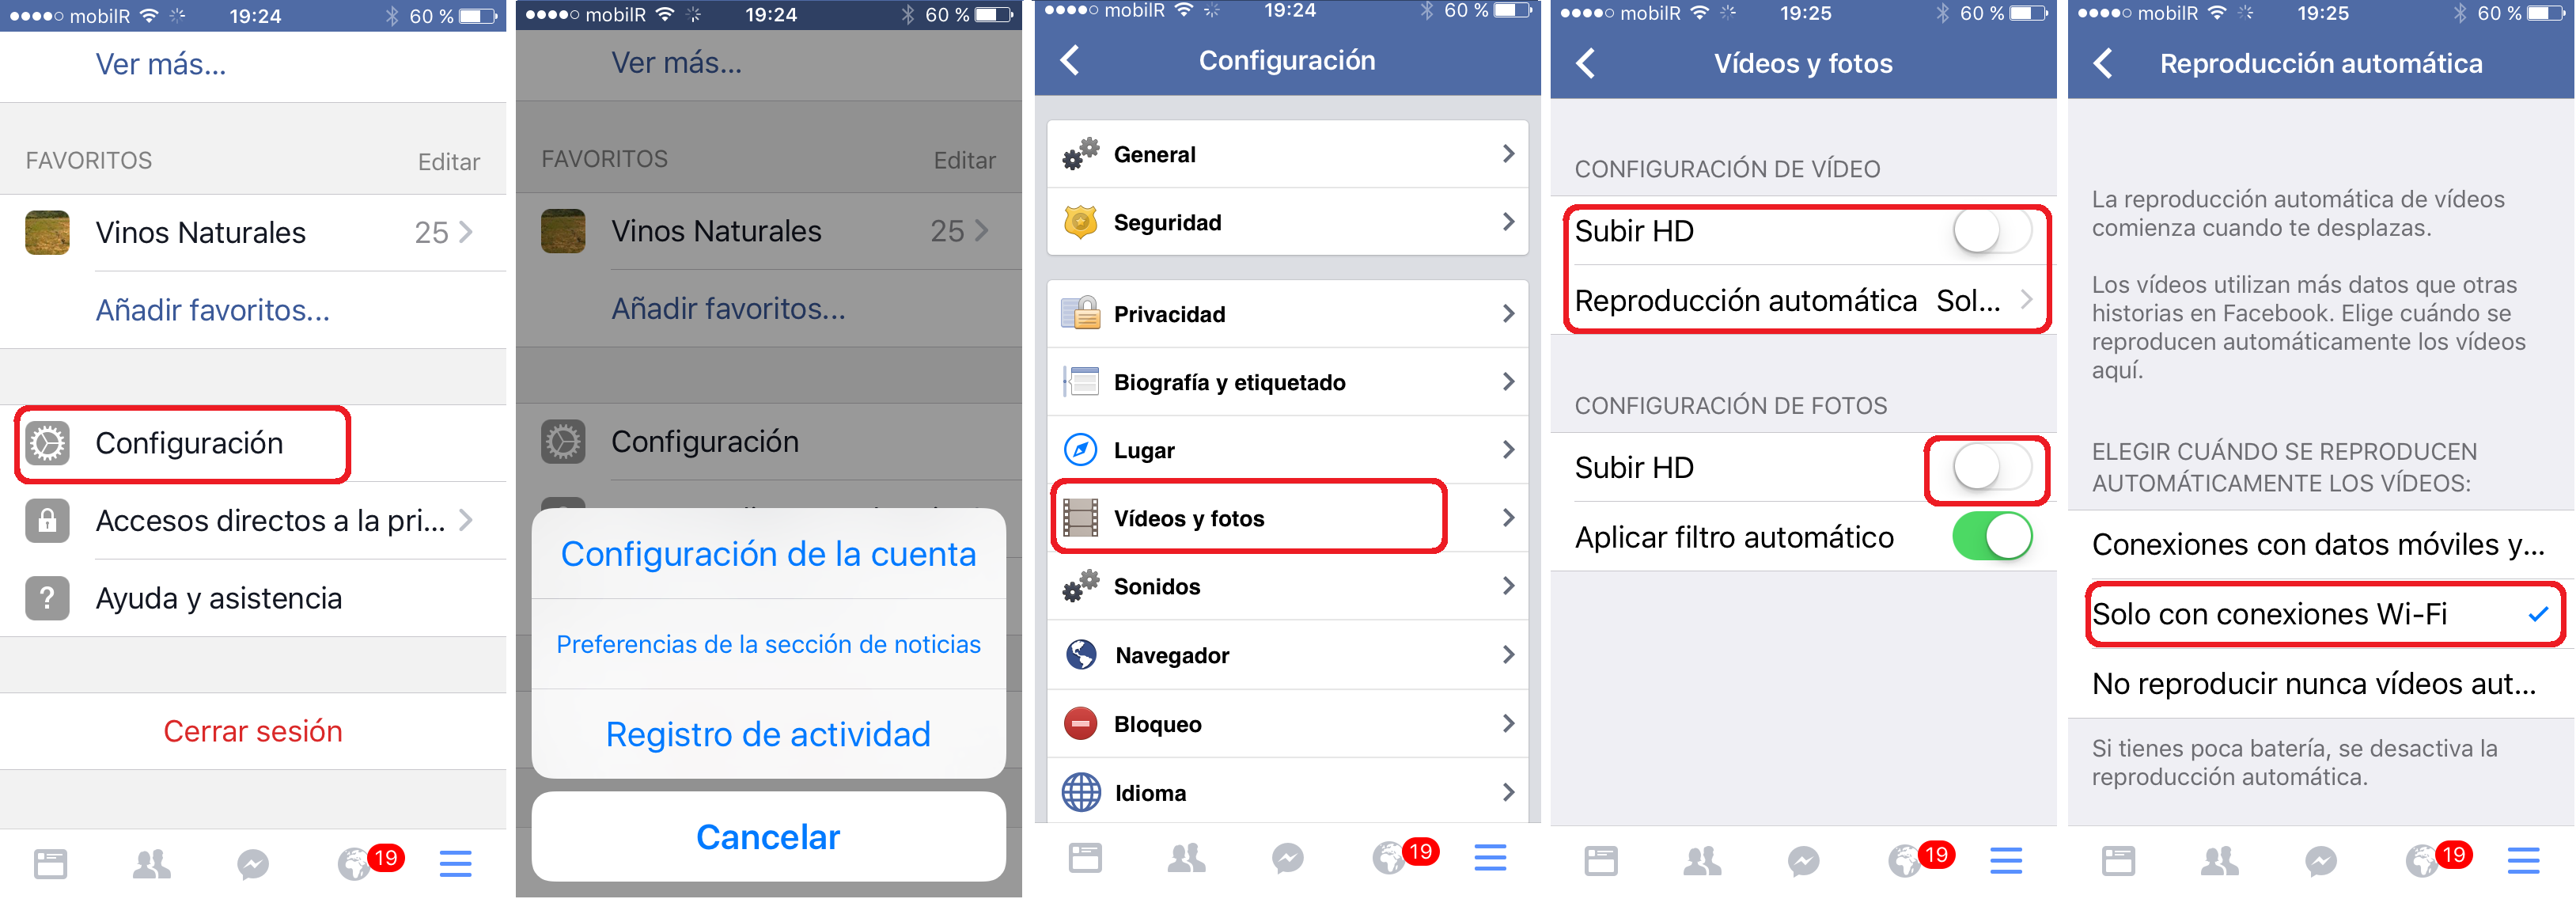 restringir reproducción de vídeos en facebook con iPhone